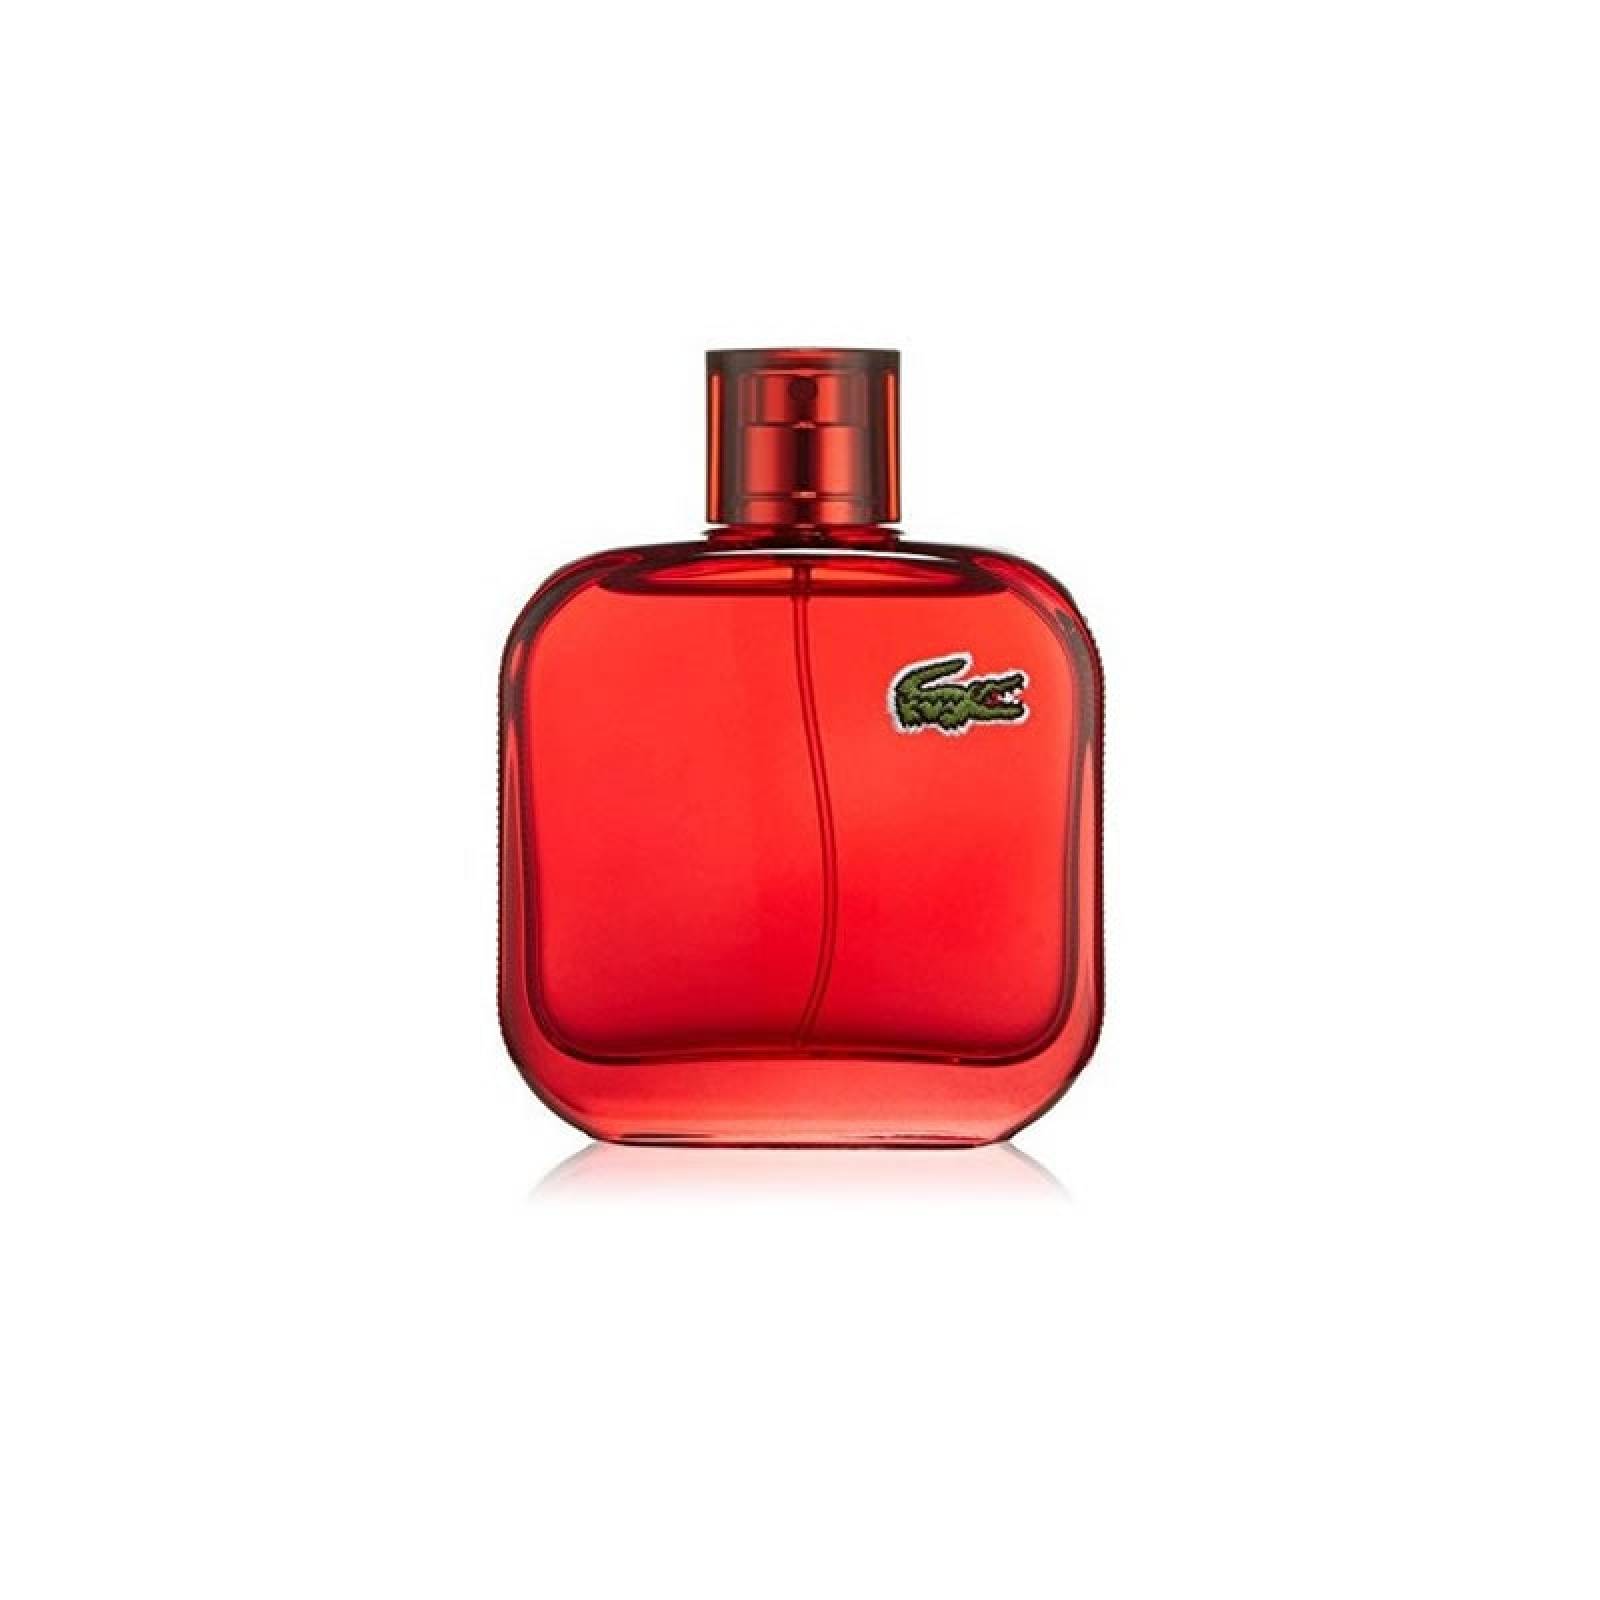 Perfume para Caballero Lacoste L1212 Rouge Eau de Toilette 100 ml